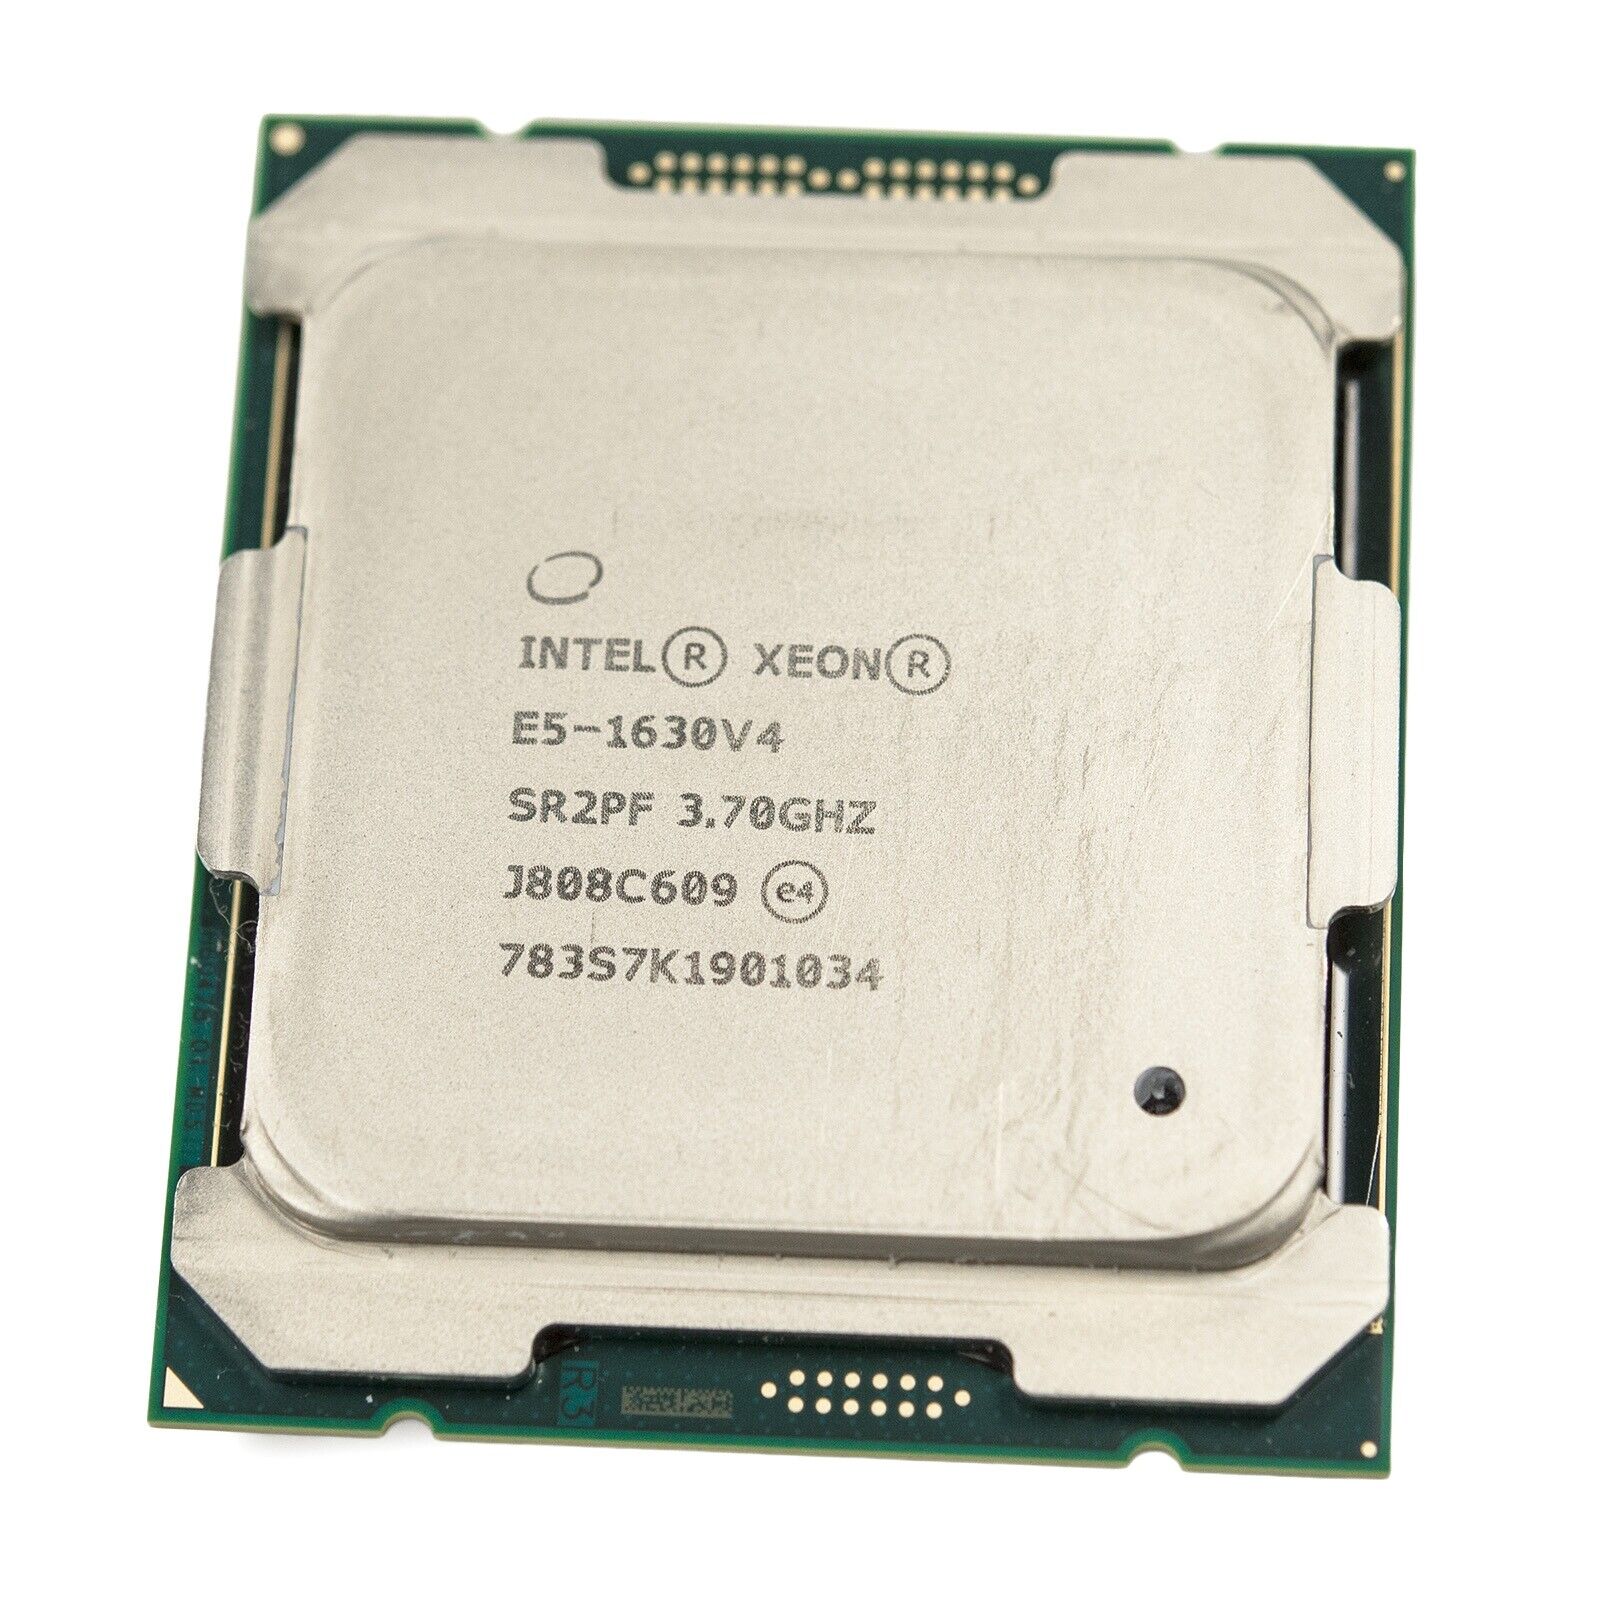 Intel Xeon E5-1630 v4 Quad-Core 3.7GHz 10MB LGA2011-3 Server CPU Processor SR2PF